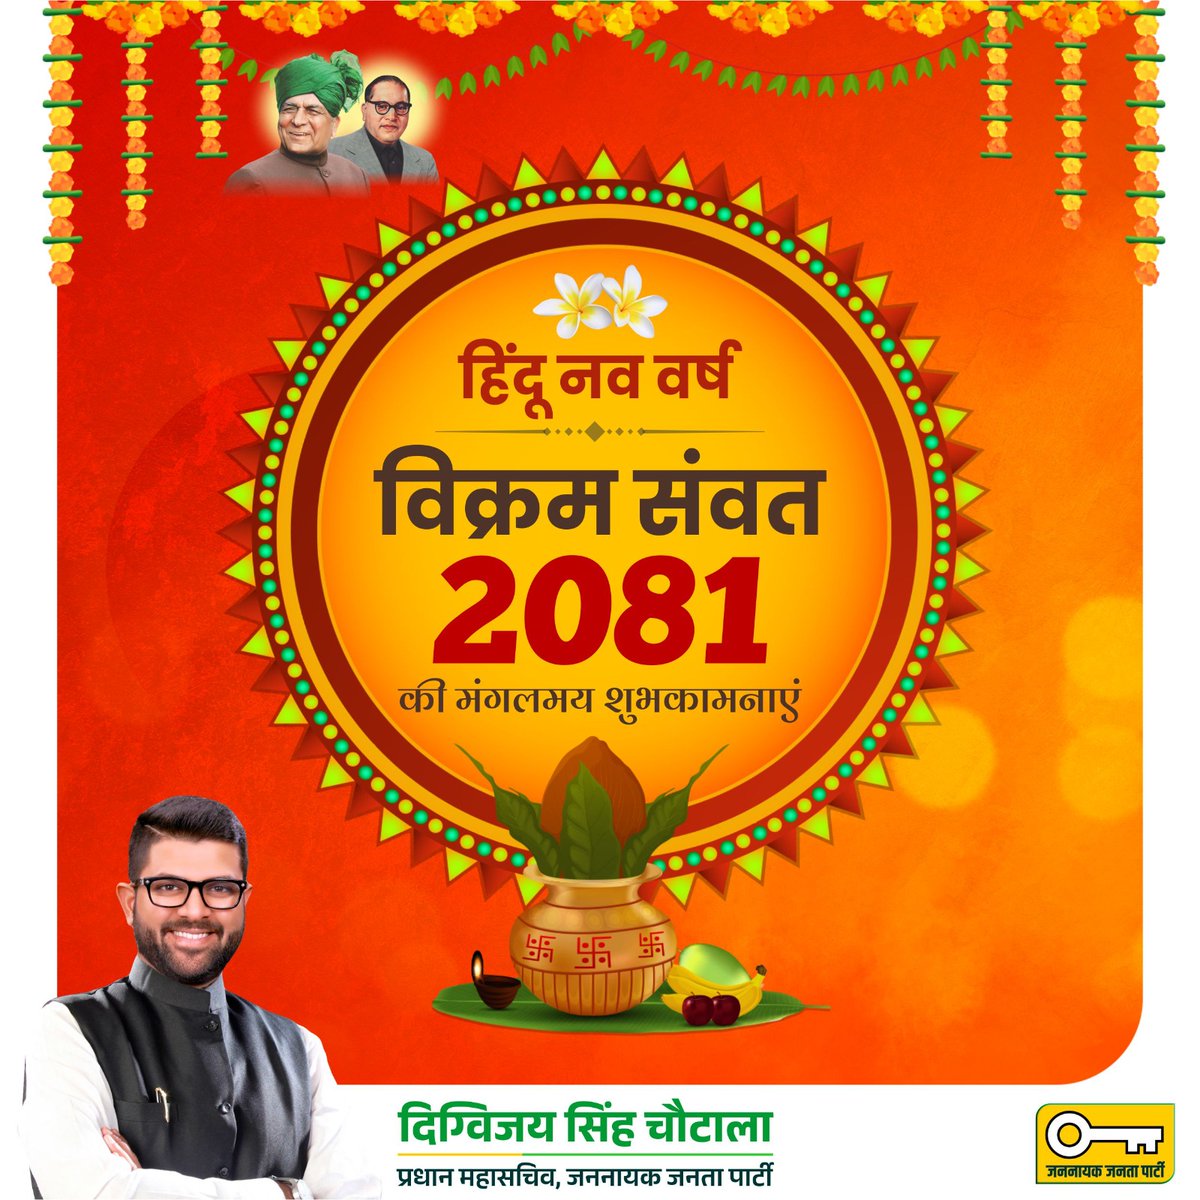 चैत्र शुक्ल प्रतिपदा हिंदू नव वर्ष, विक्रम संवत 2081 की आप सभी को मंगलमय शुभकामनाएं। यह नव वर्ष आप सभी के जीवन में उत्तम स्वास्थ्य एवं समृद्धि लेकर आए।